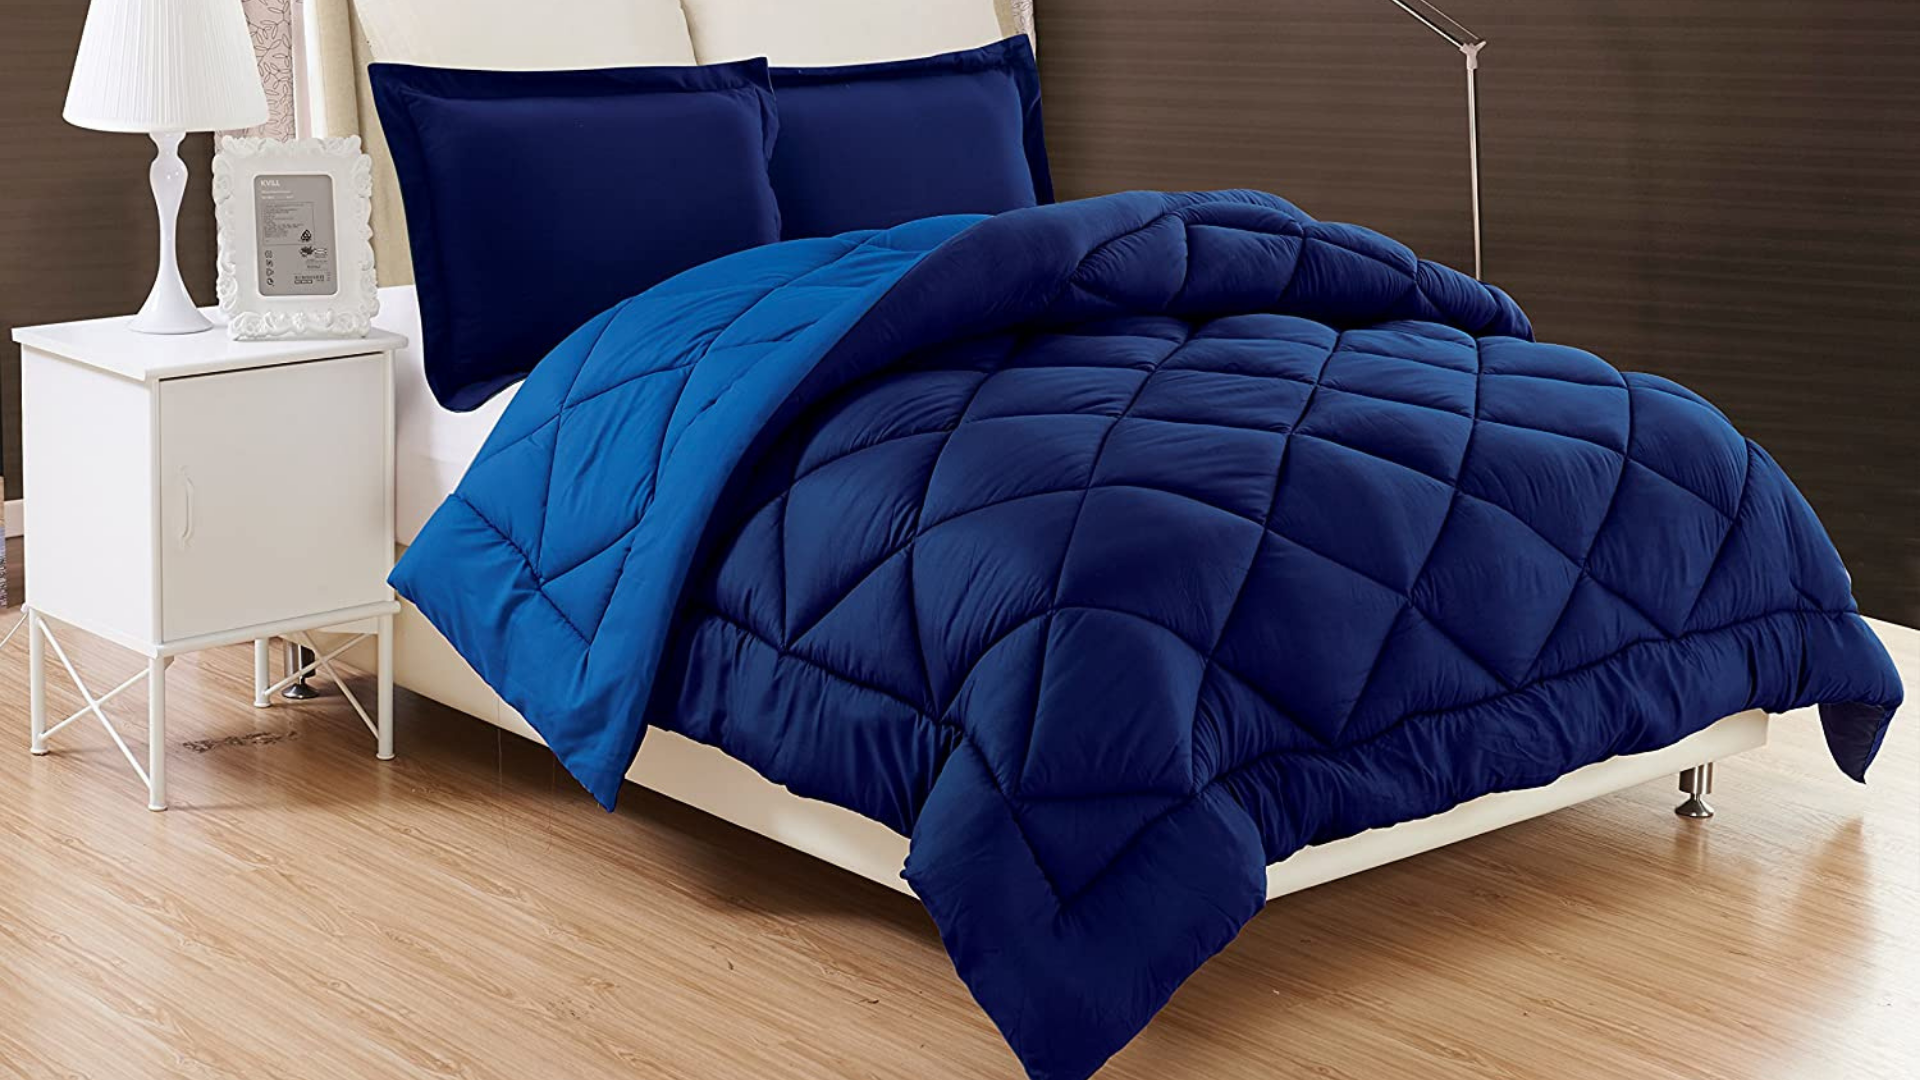 Best winter comforter